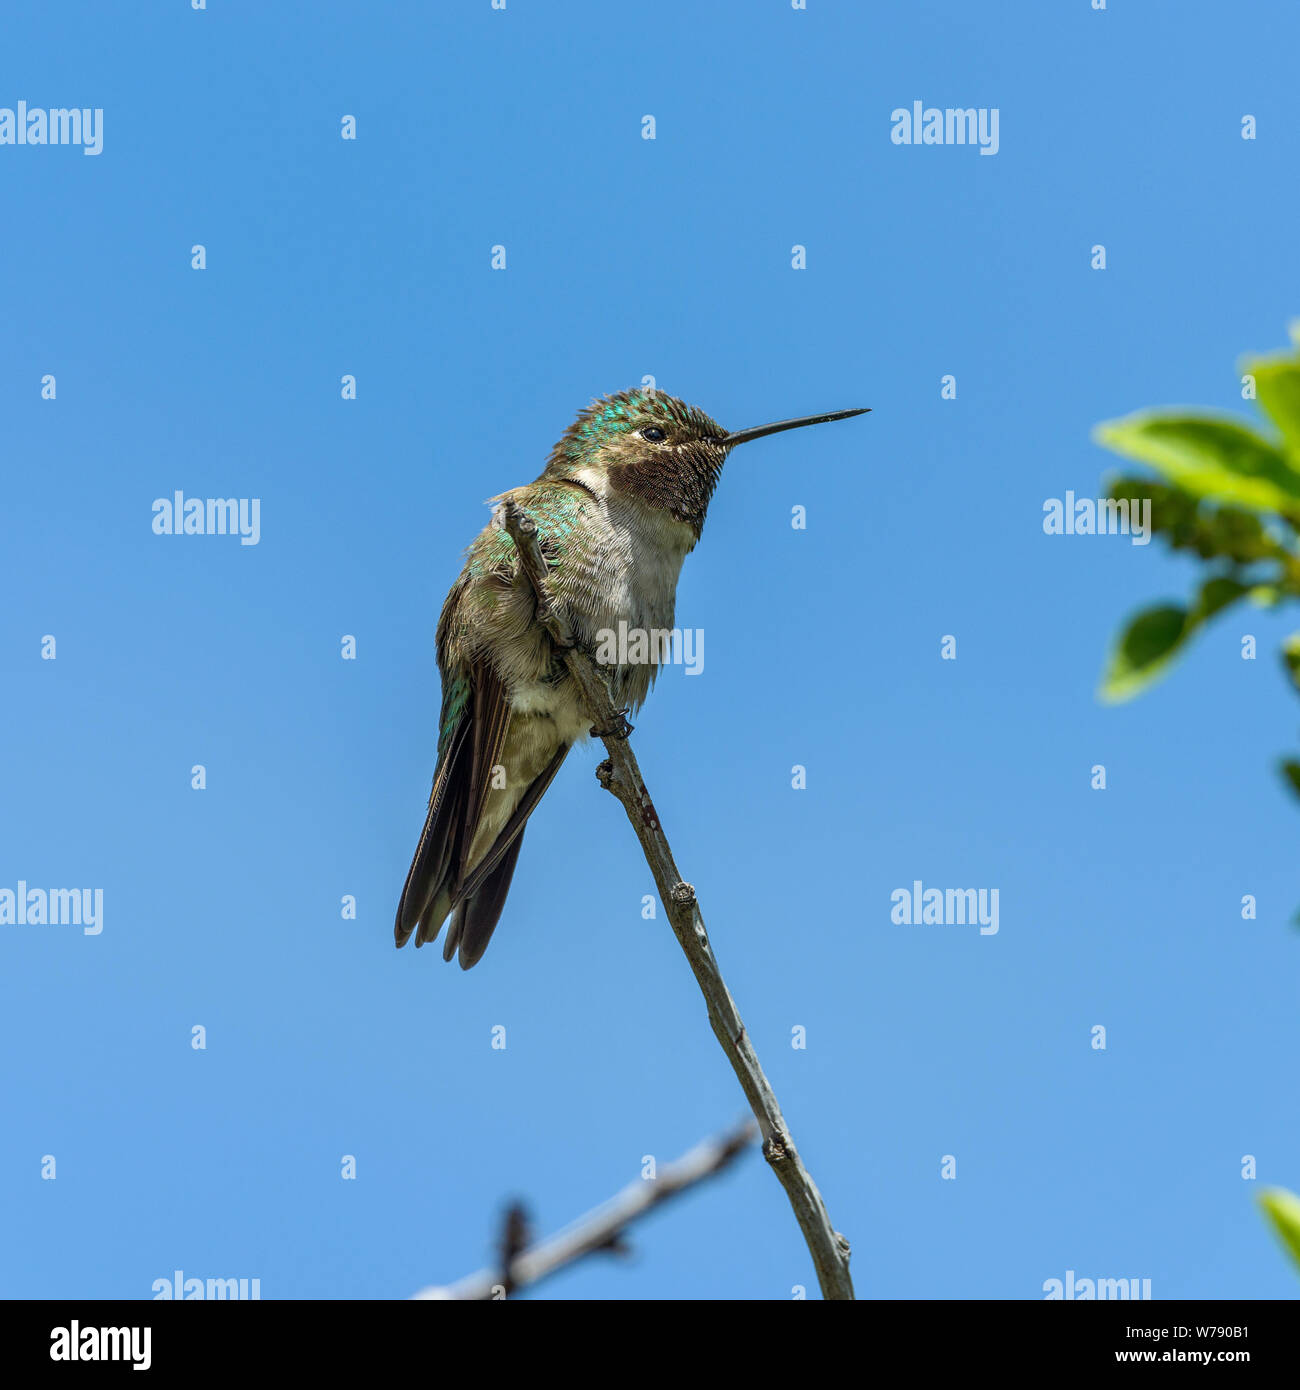 Hummingbird - un faible angle de vue latérale d'un petit Colibri à queue large mâle perché en haut d'un grand arbuste. Rocky Mountain National Park, CO, États-Unis d'Amérique. Banque D'Images